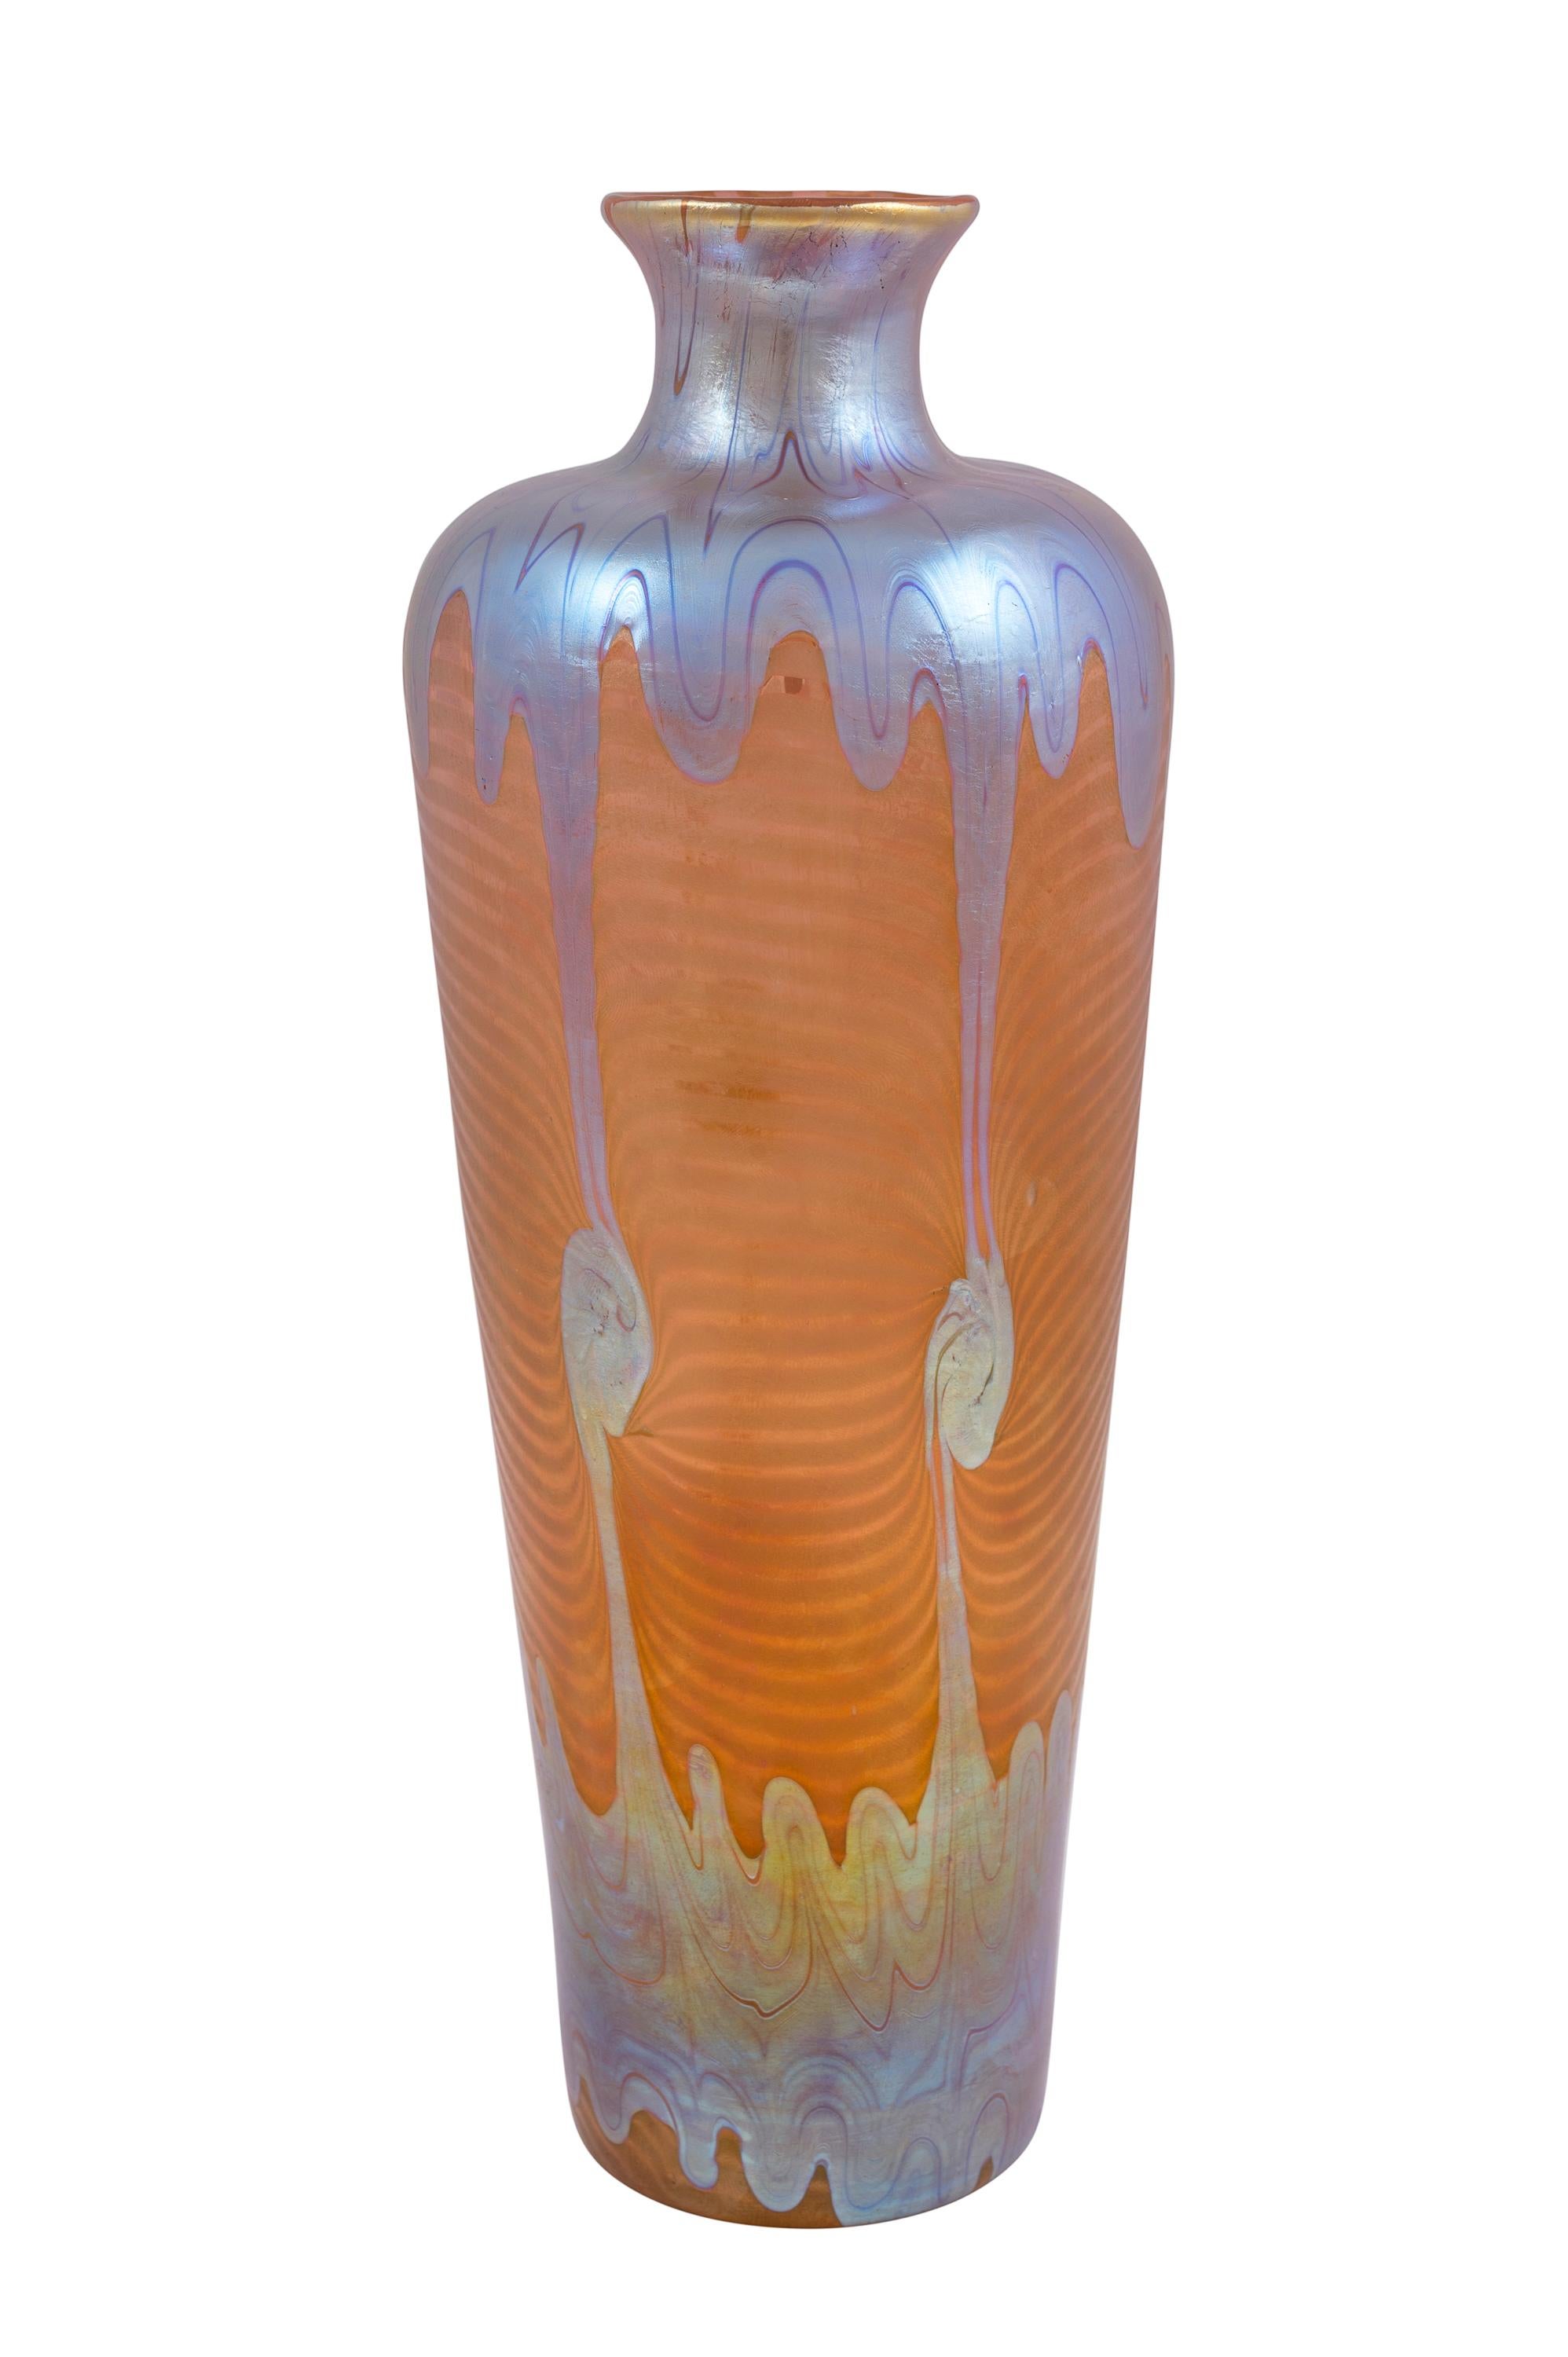 Vase en verre, fabriqué par Johann Loetz Witwe, décoration PG 1/214, ca. 1901, signé Art Nouveau, Jugendstil, Art Deco, verre d'art, verre irisé, orange, bleu, argent

signé 